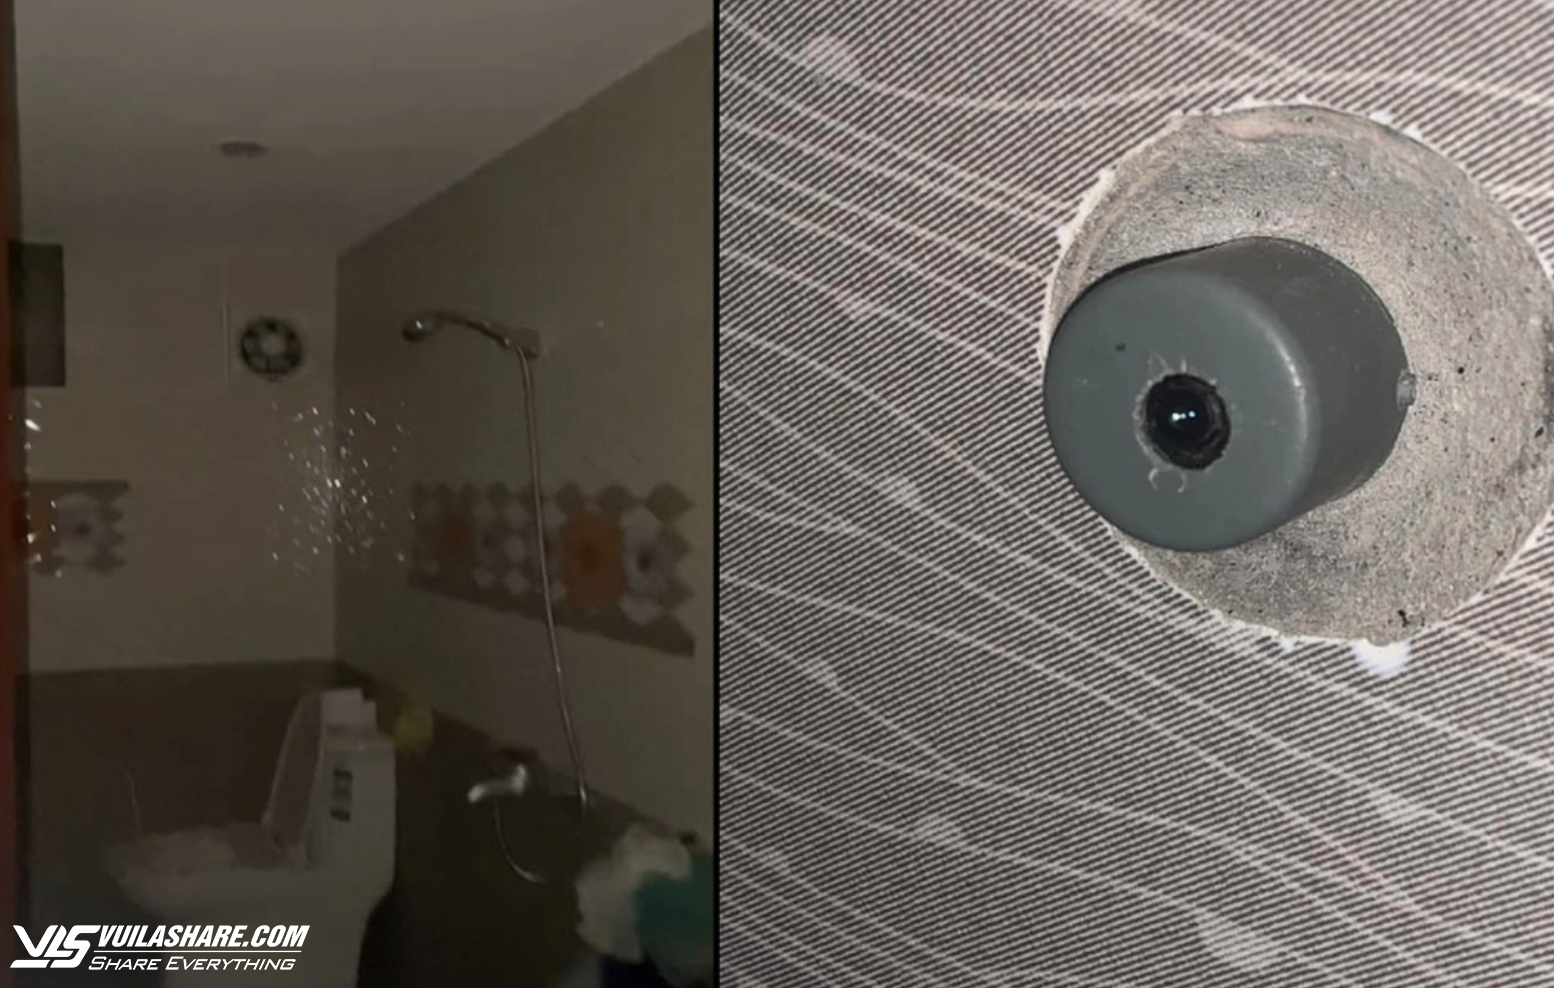 Nữ sinh phát hiện chủ nhà trọ lắp camera quay lén trong phòng tắm- Ảnh 1.